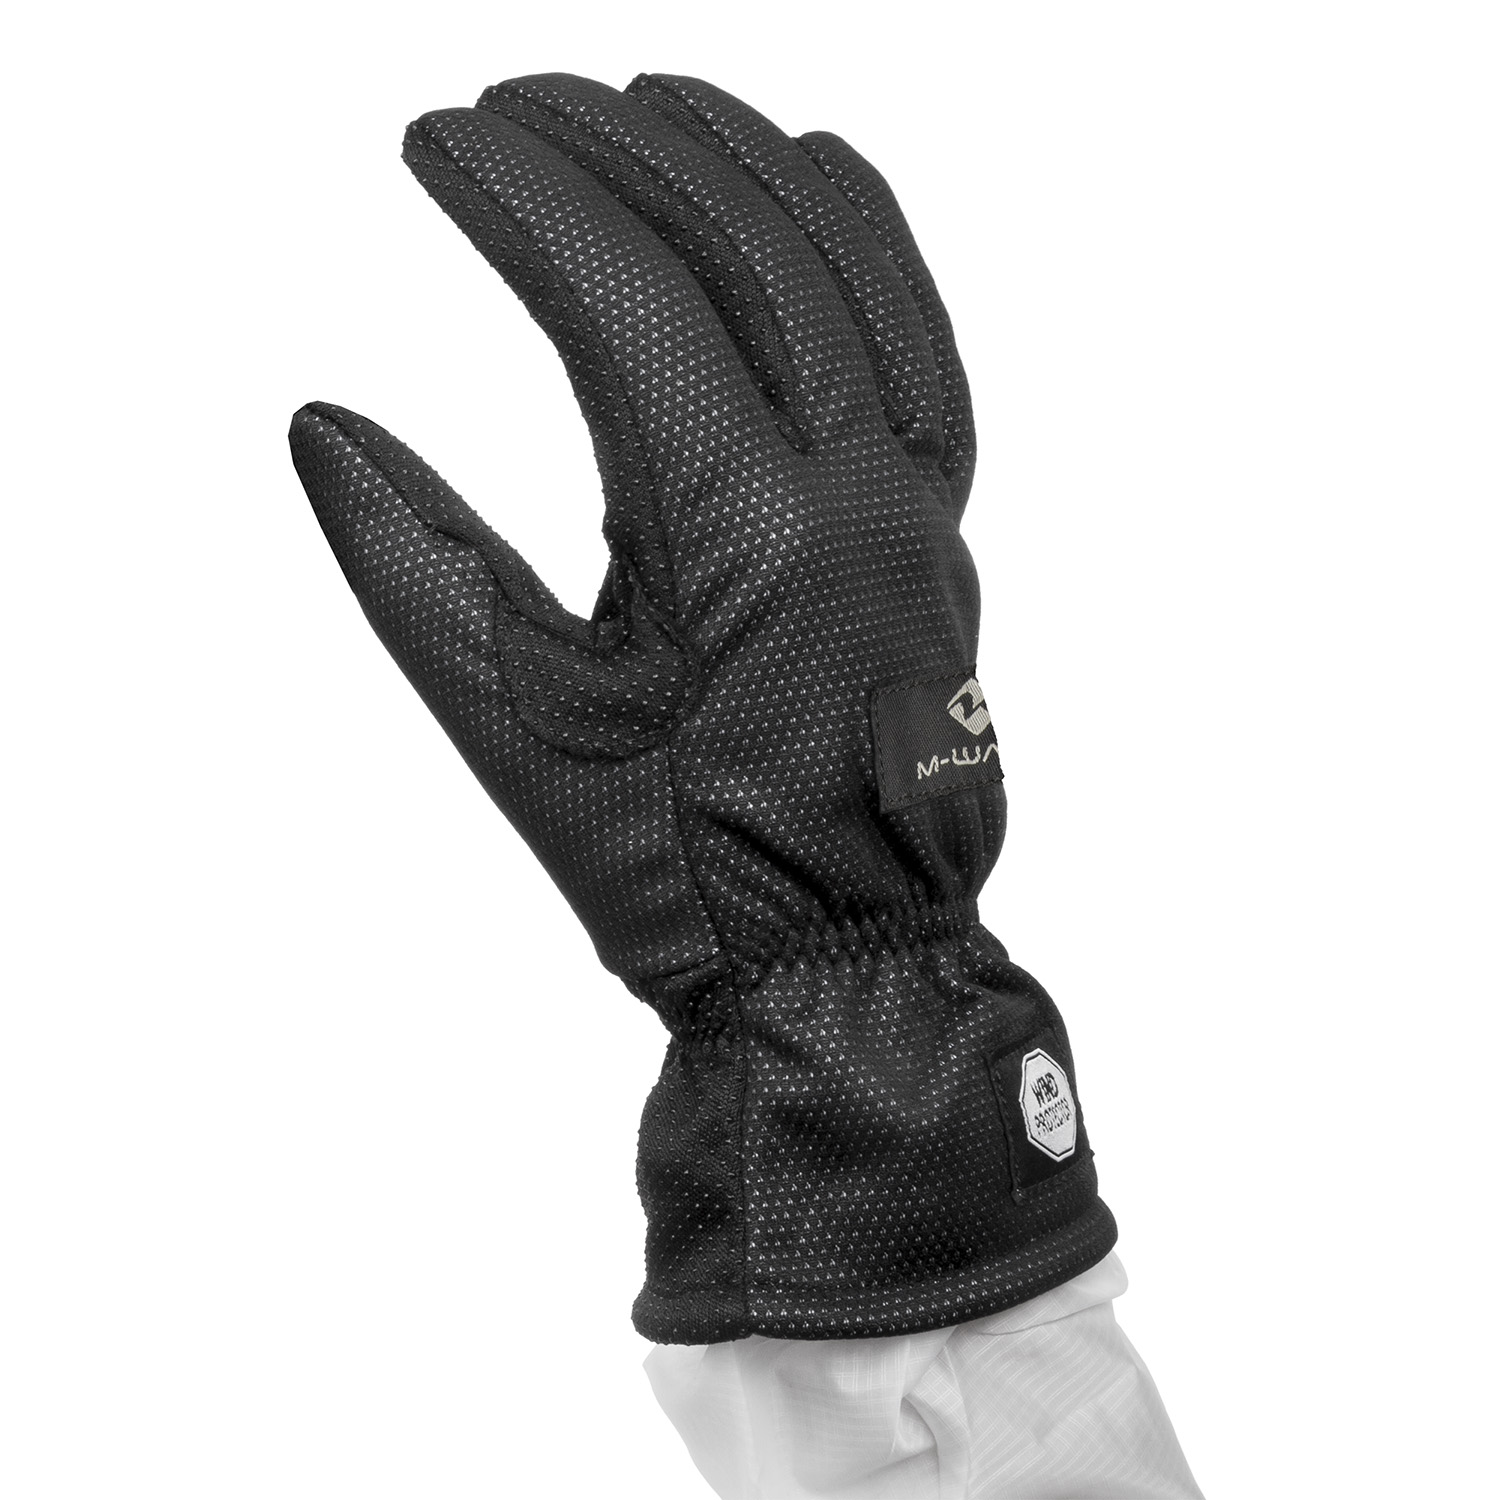 Winter Handschuh Gr. L/XL in Schwarz/Anthrazit